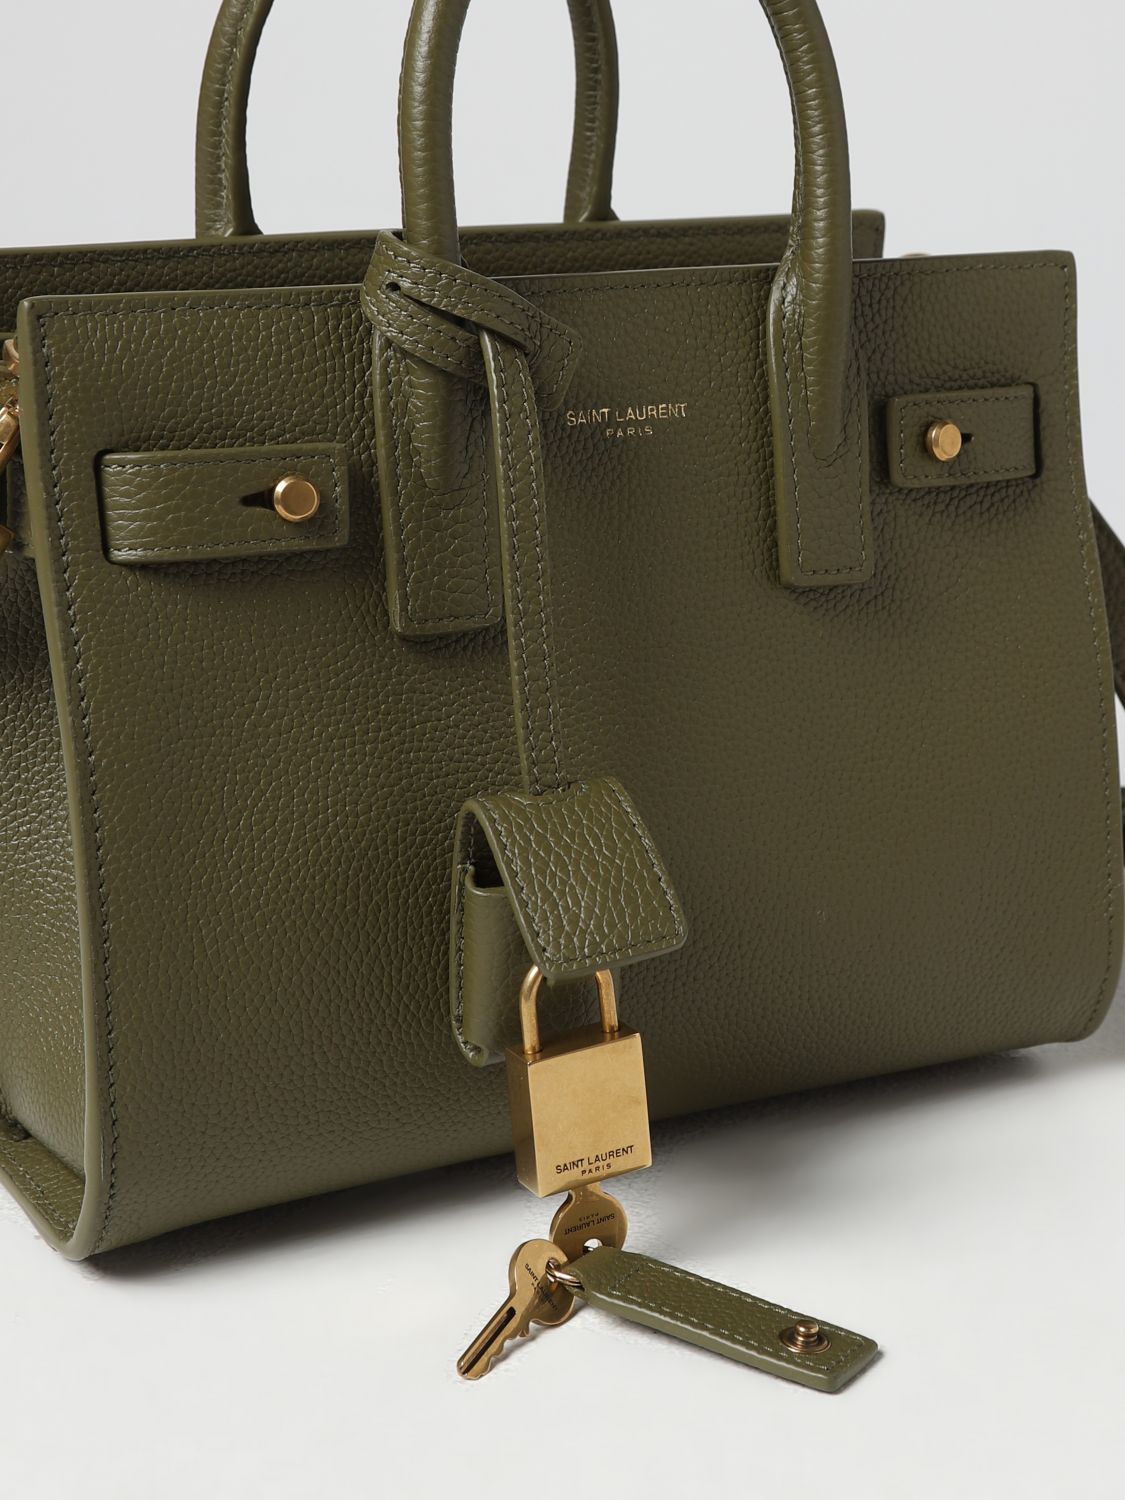 Saint Laurent - Authenticated Sac de Jour Handbag - Leather Green Plain for Women, Good Condition